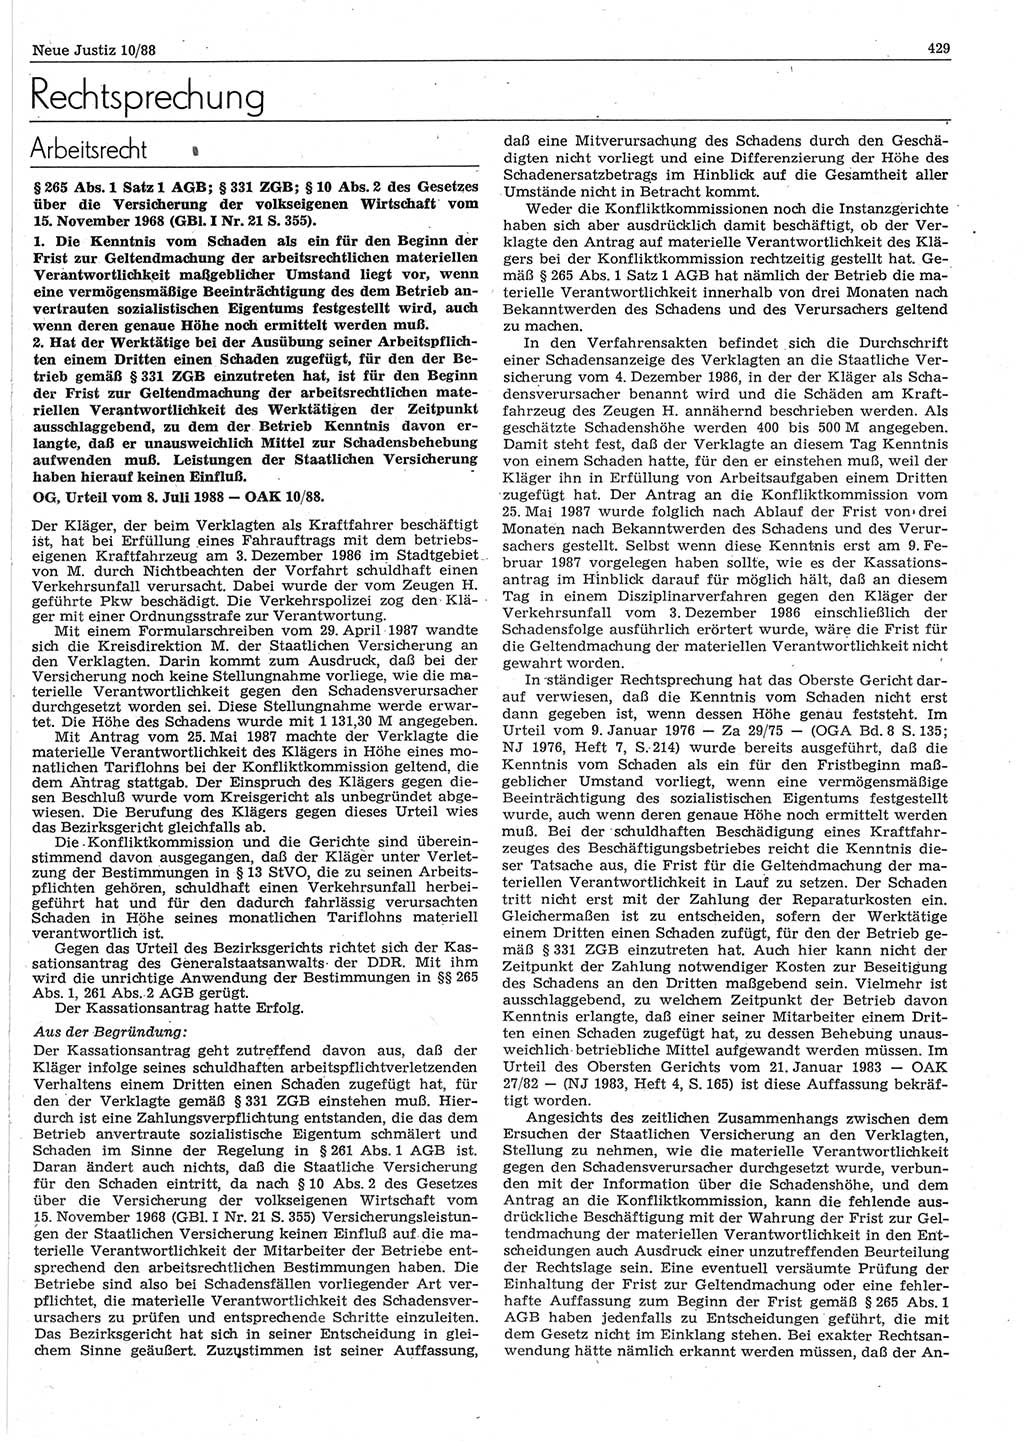 Neue Justiz (NJ), Zeitschrift für sozialistisches Recht und Gesetzlichkeit [Deutsche Demokratische Republik (DDR)], 42. Jahrgang 1988, Seite 429 (NJ DDR 1988, S. 429)